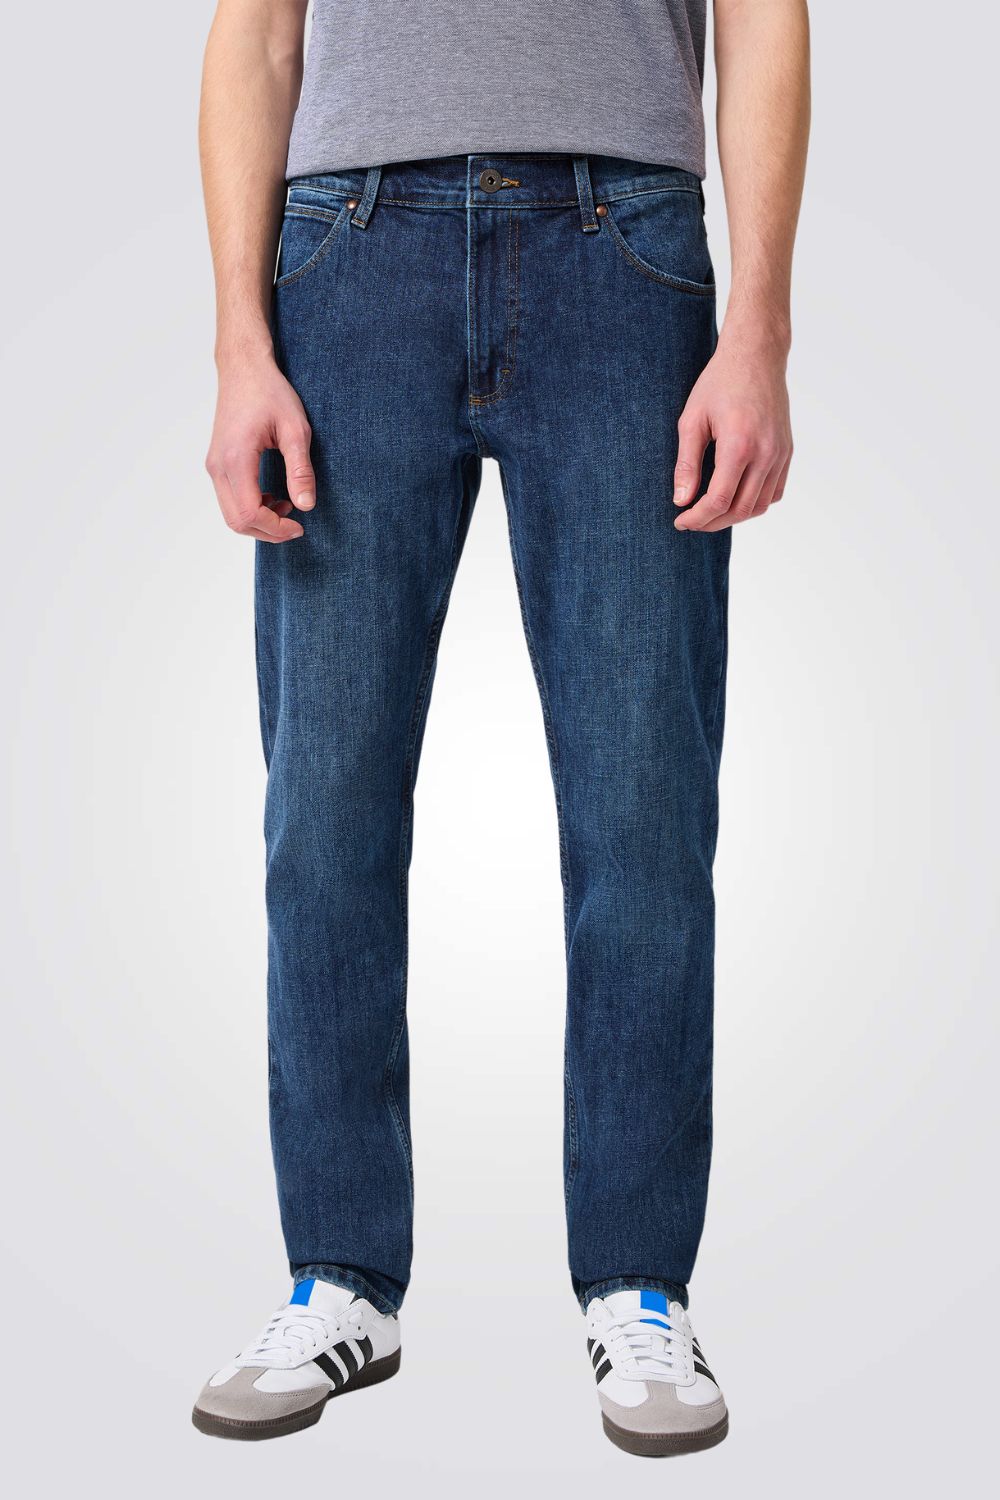 ג'ינס בצבע כחול